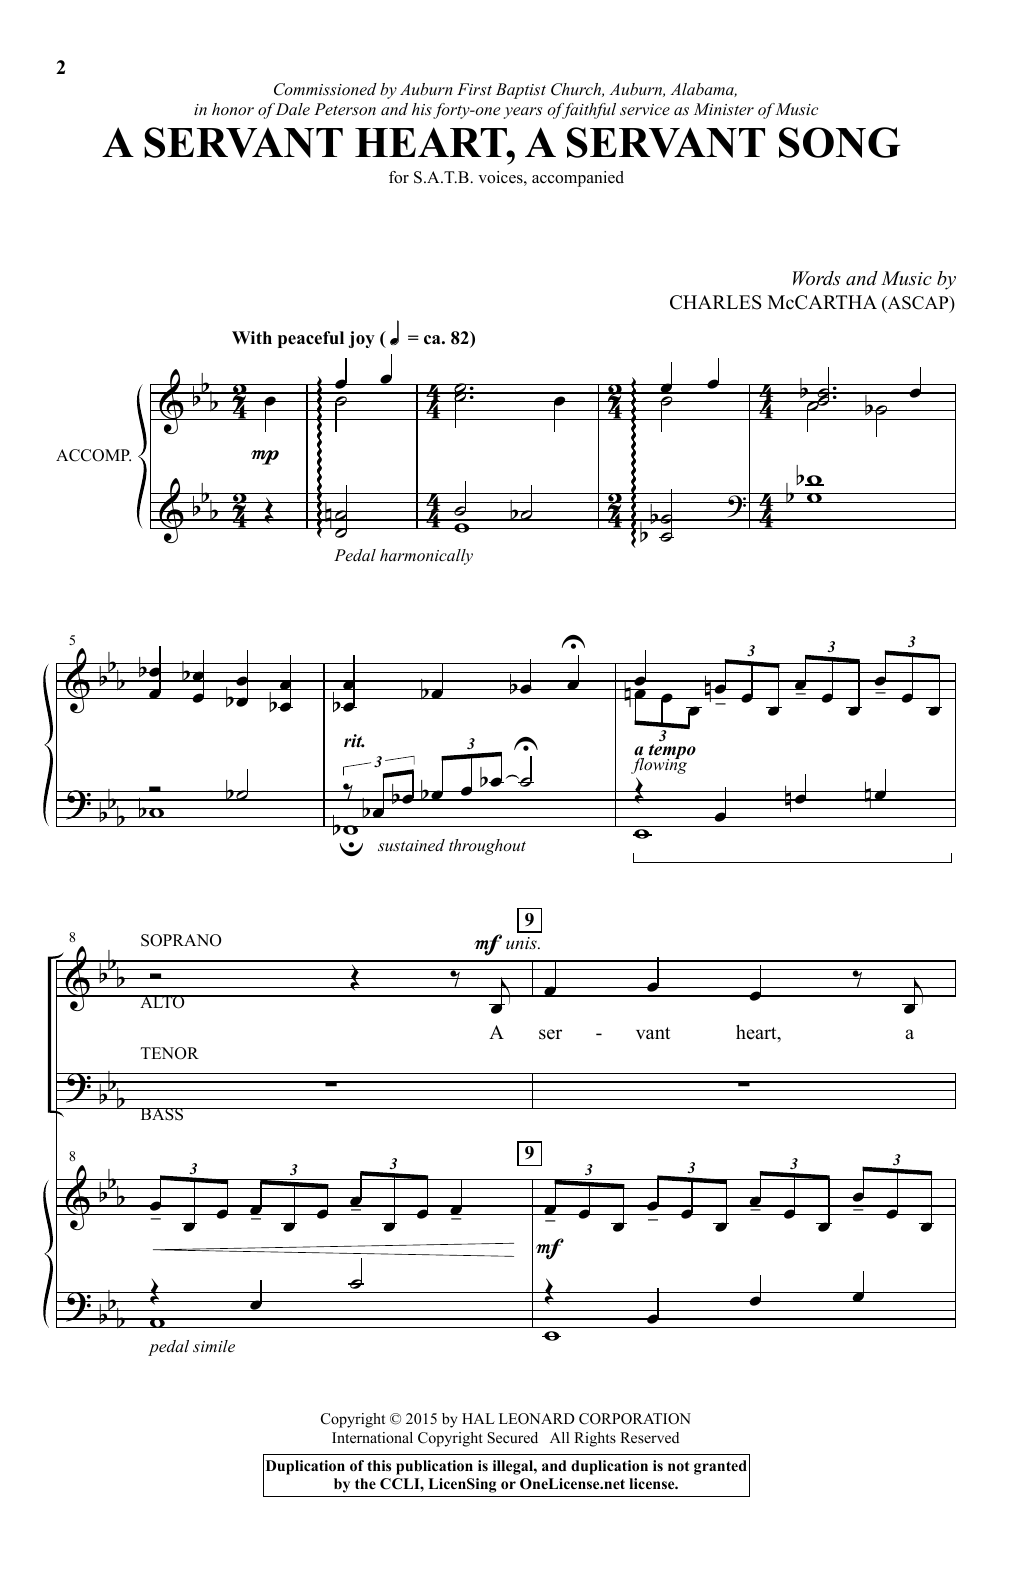 Charles McCartha A Servant Heart, A Servant Song sheet music notes and chords arranged for SATB Choir